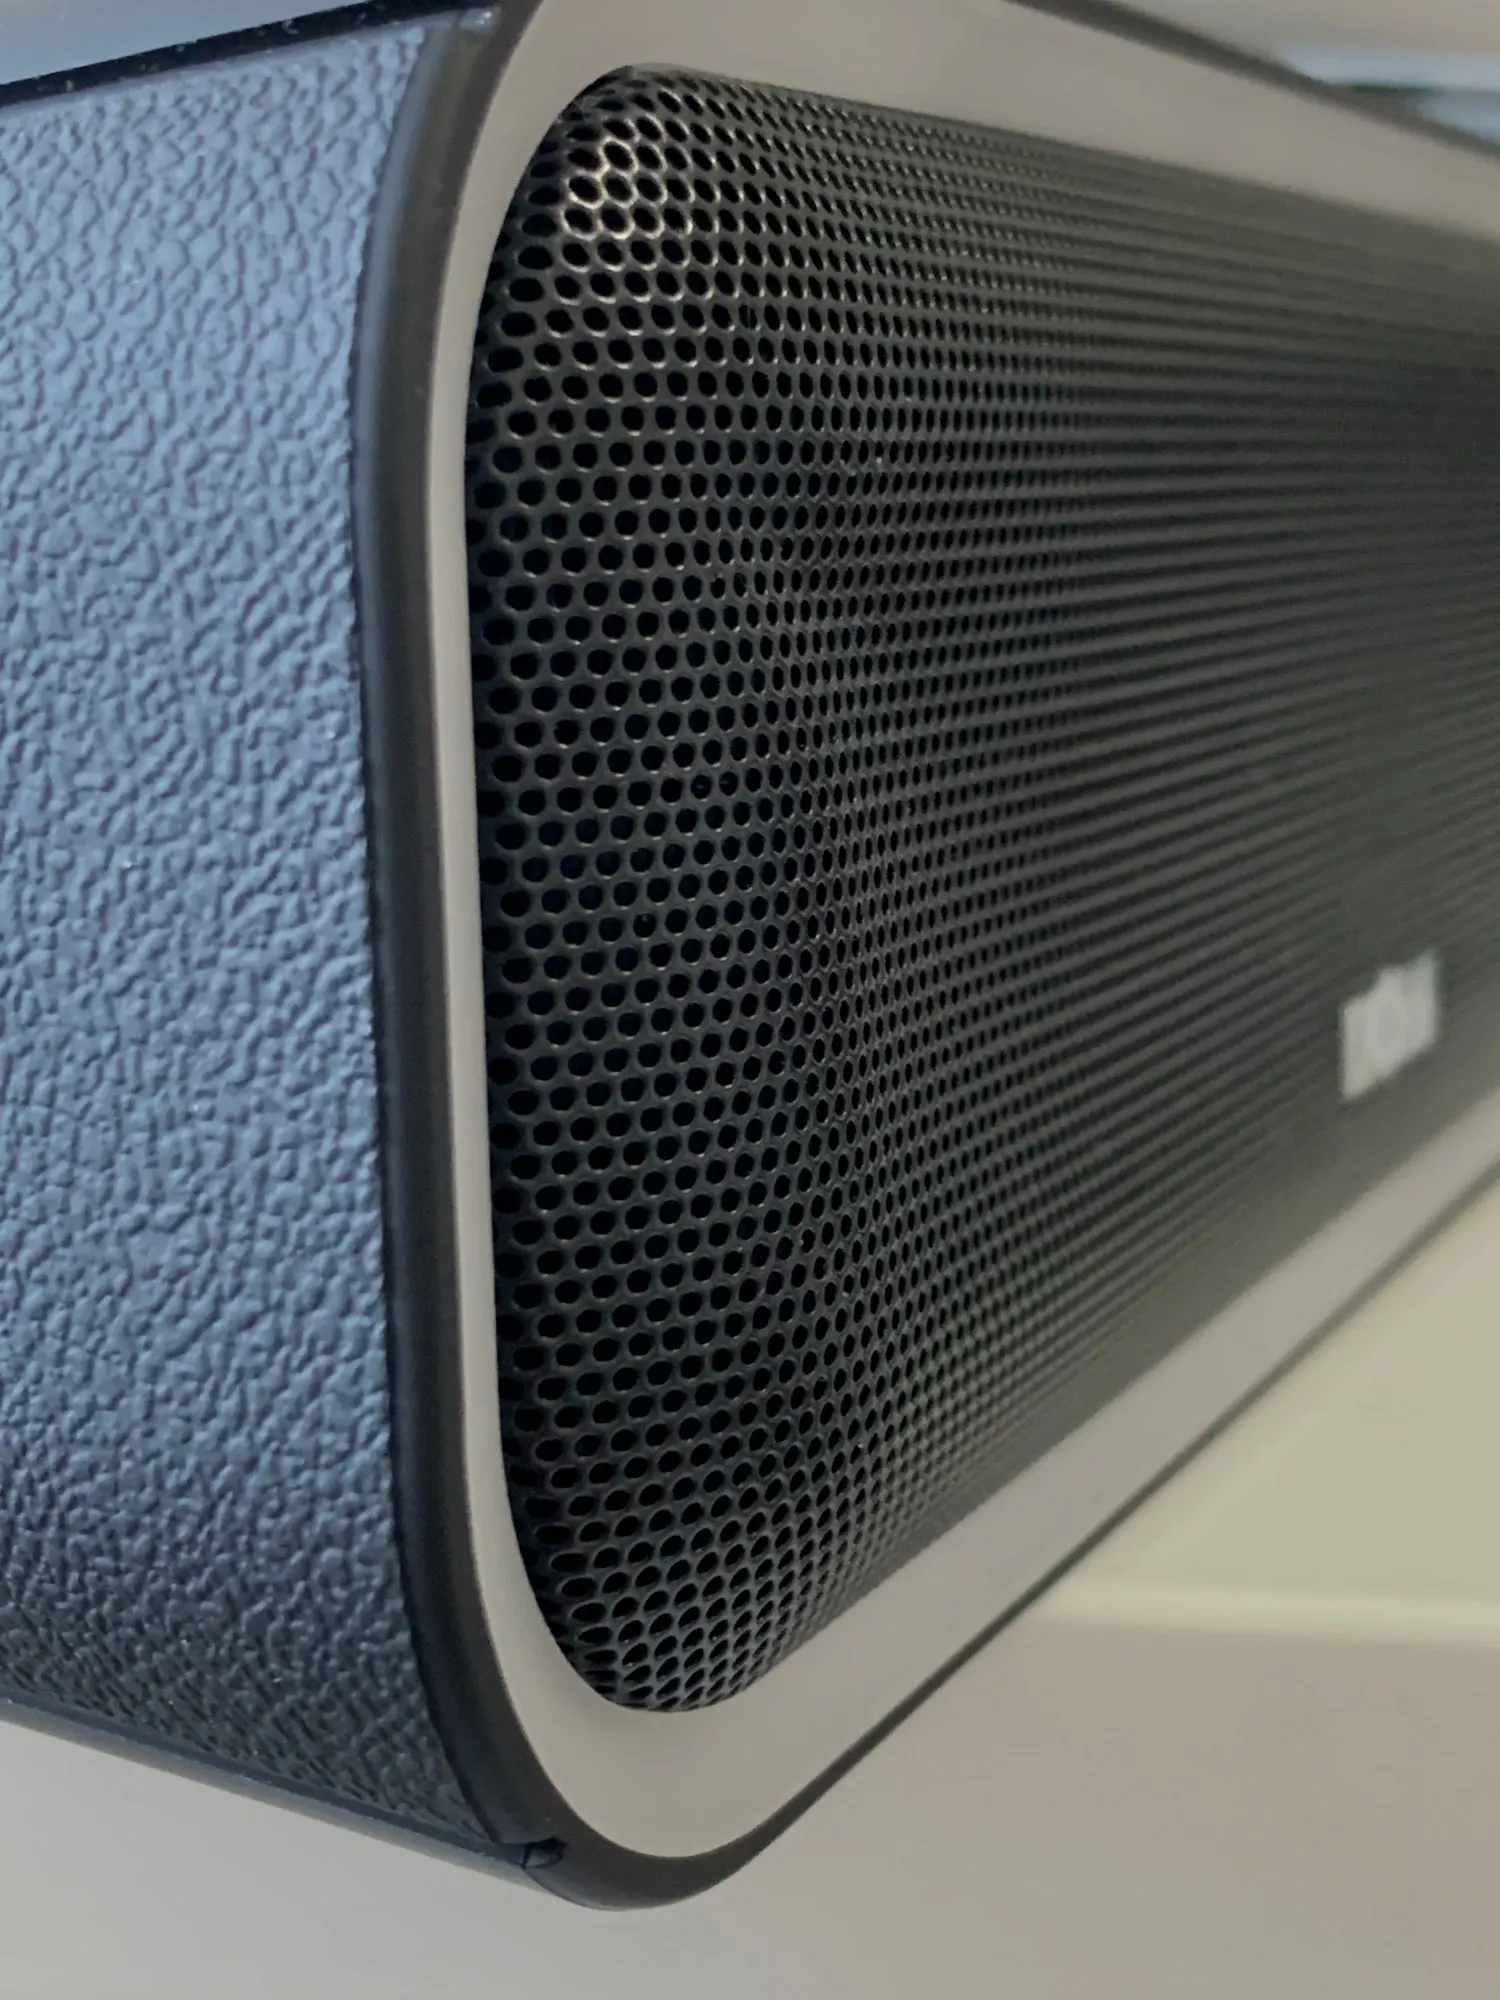 DOSS SoundBox Pro+ TWS Wireless Bluetooth Speaker 24W Impressive Sound photo review